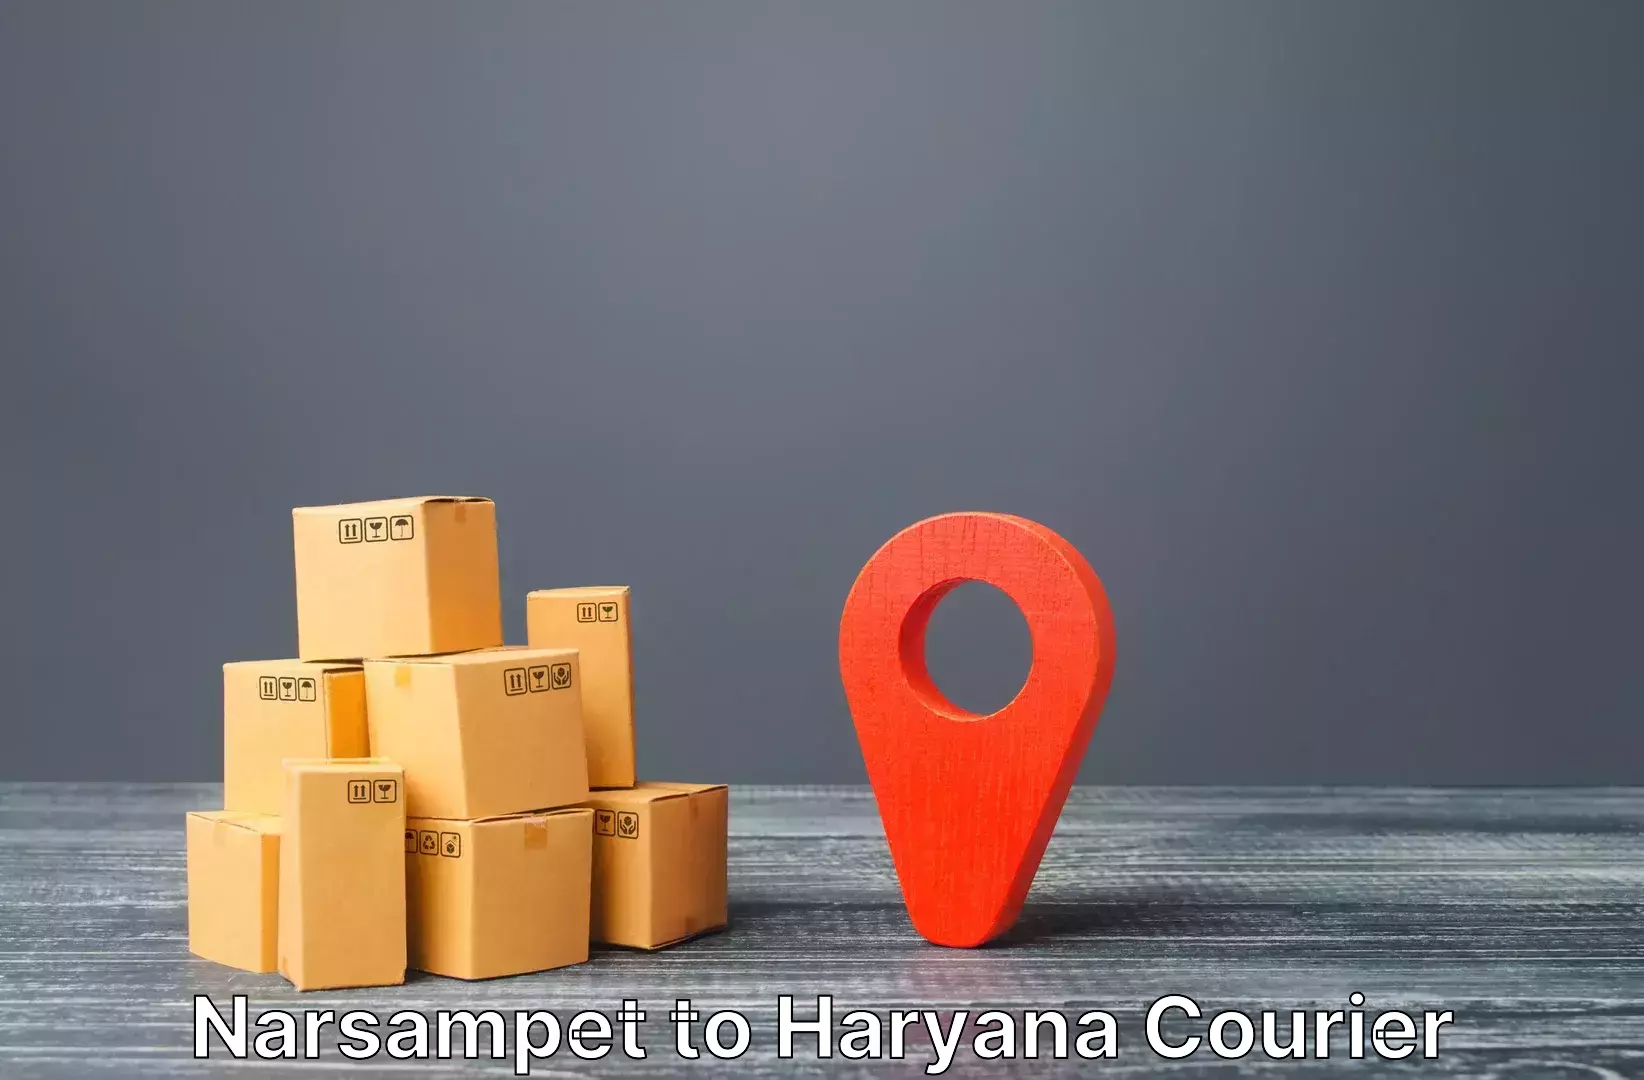 Baggage transport network Narsampet to NCR Haryana